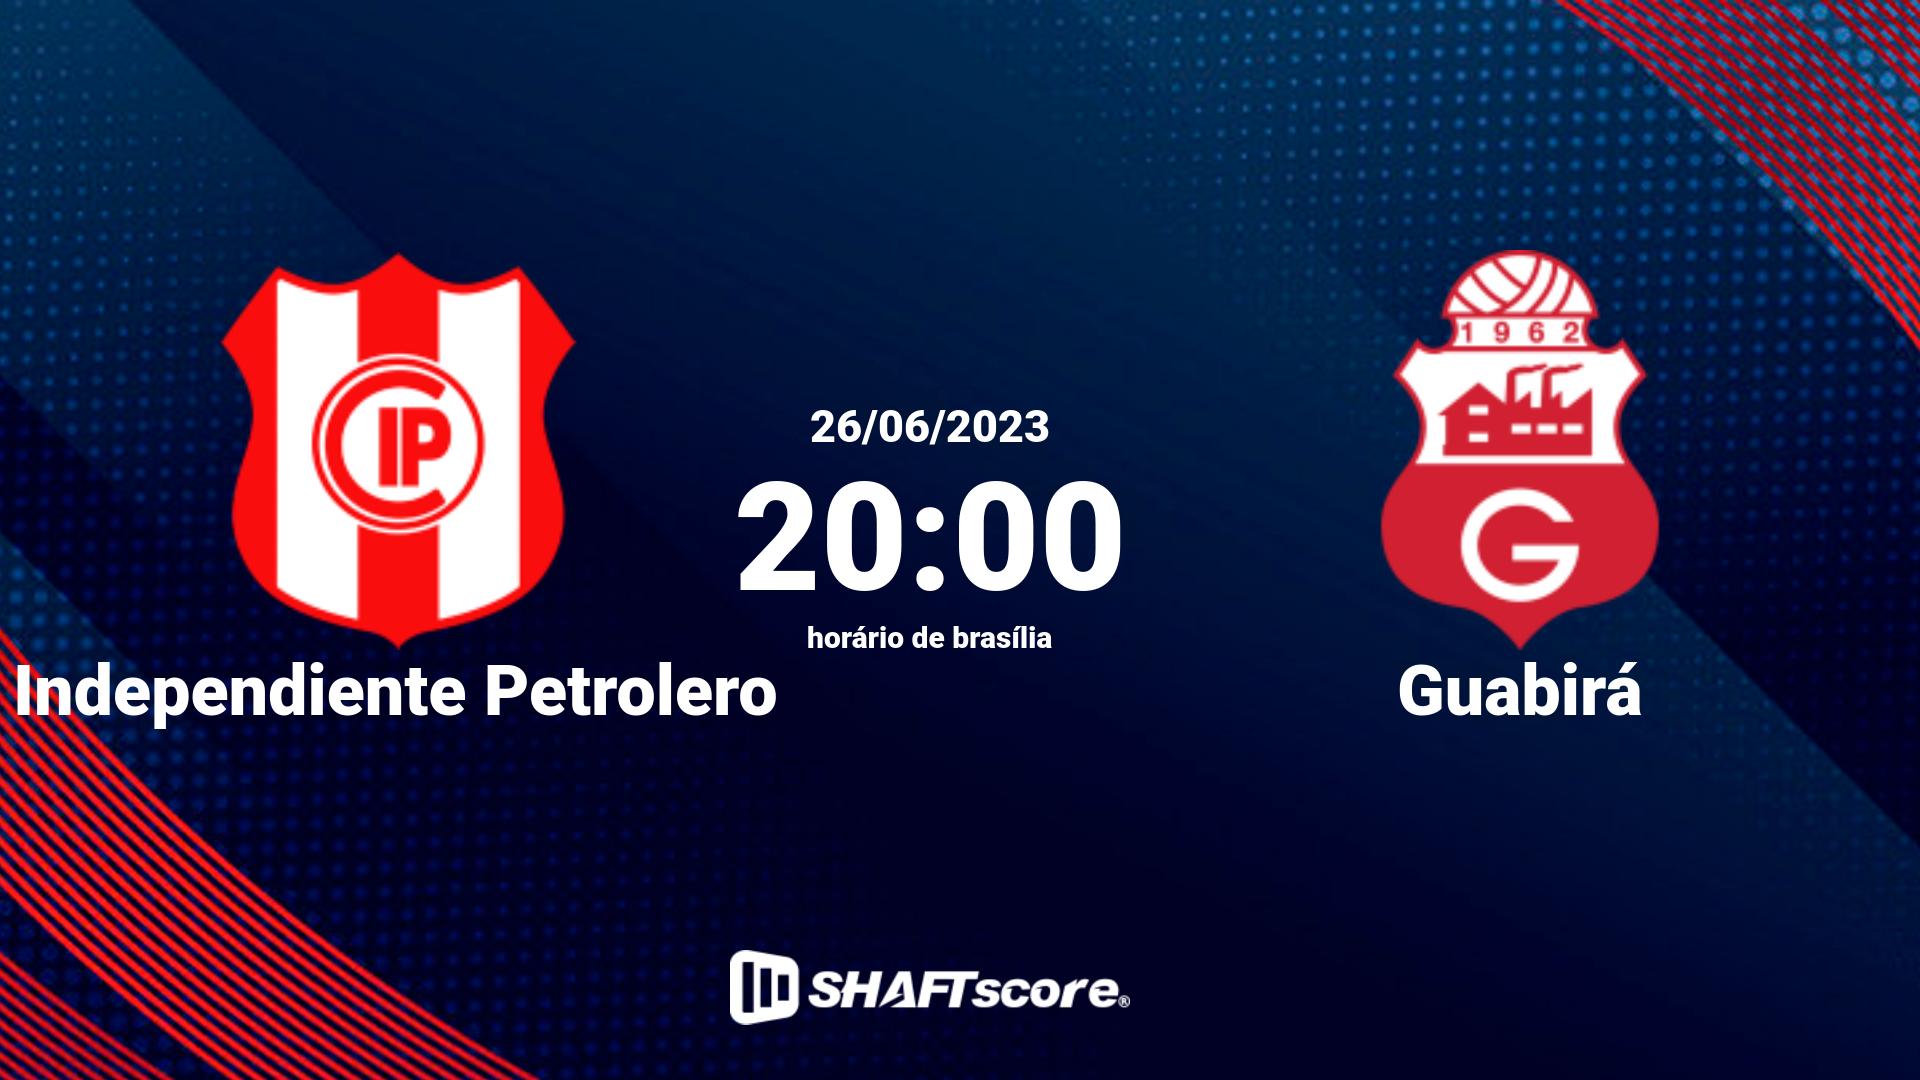 Estatísticas do jogo Independiente Petrolero vs Guabirá 26.06 20:00